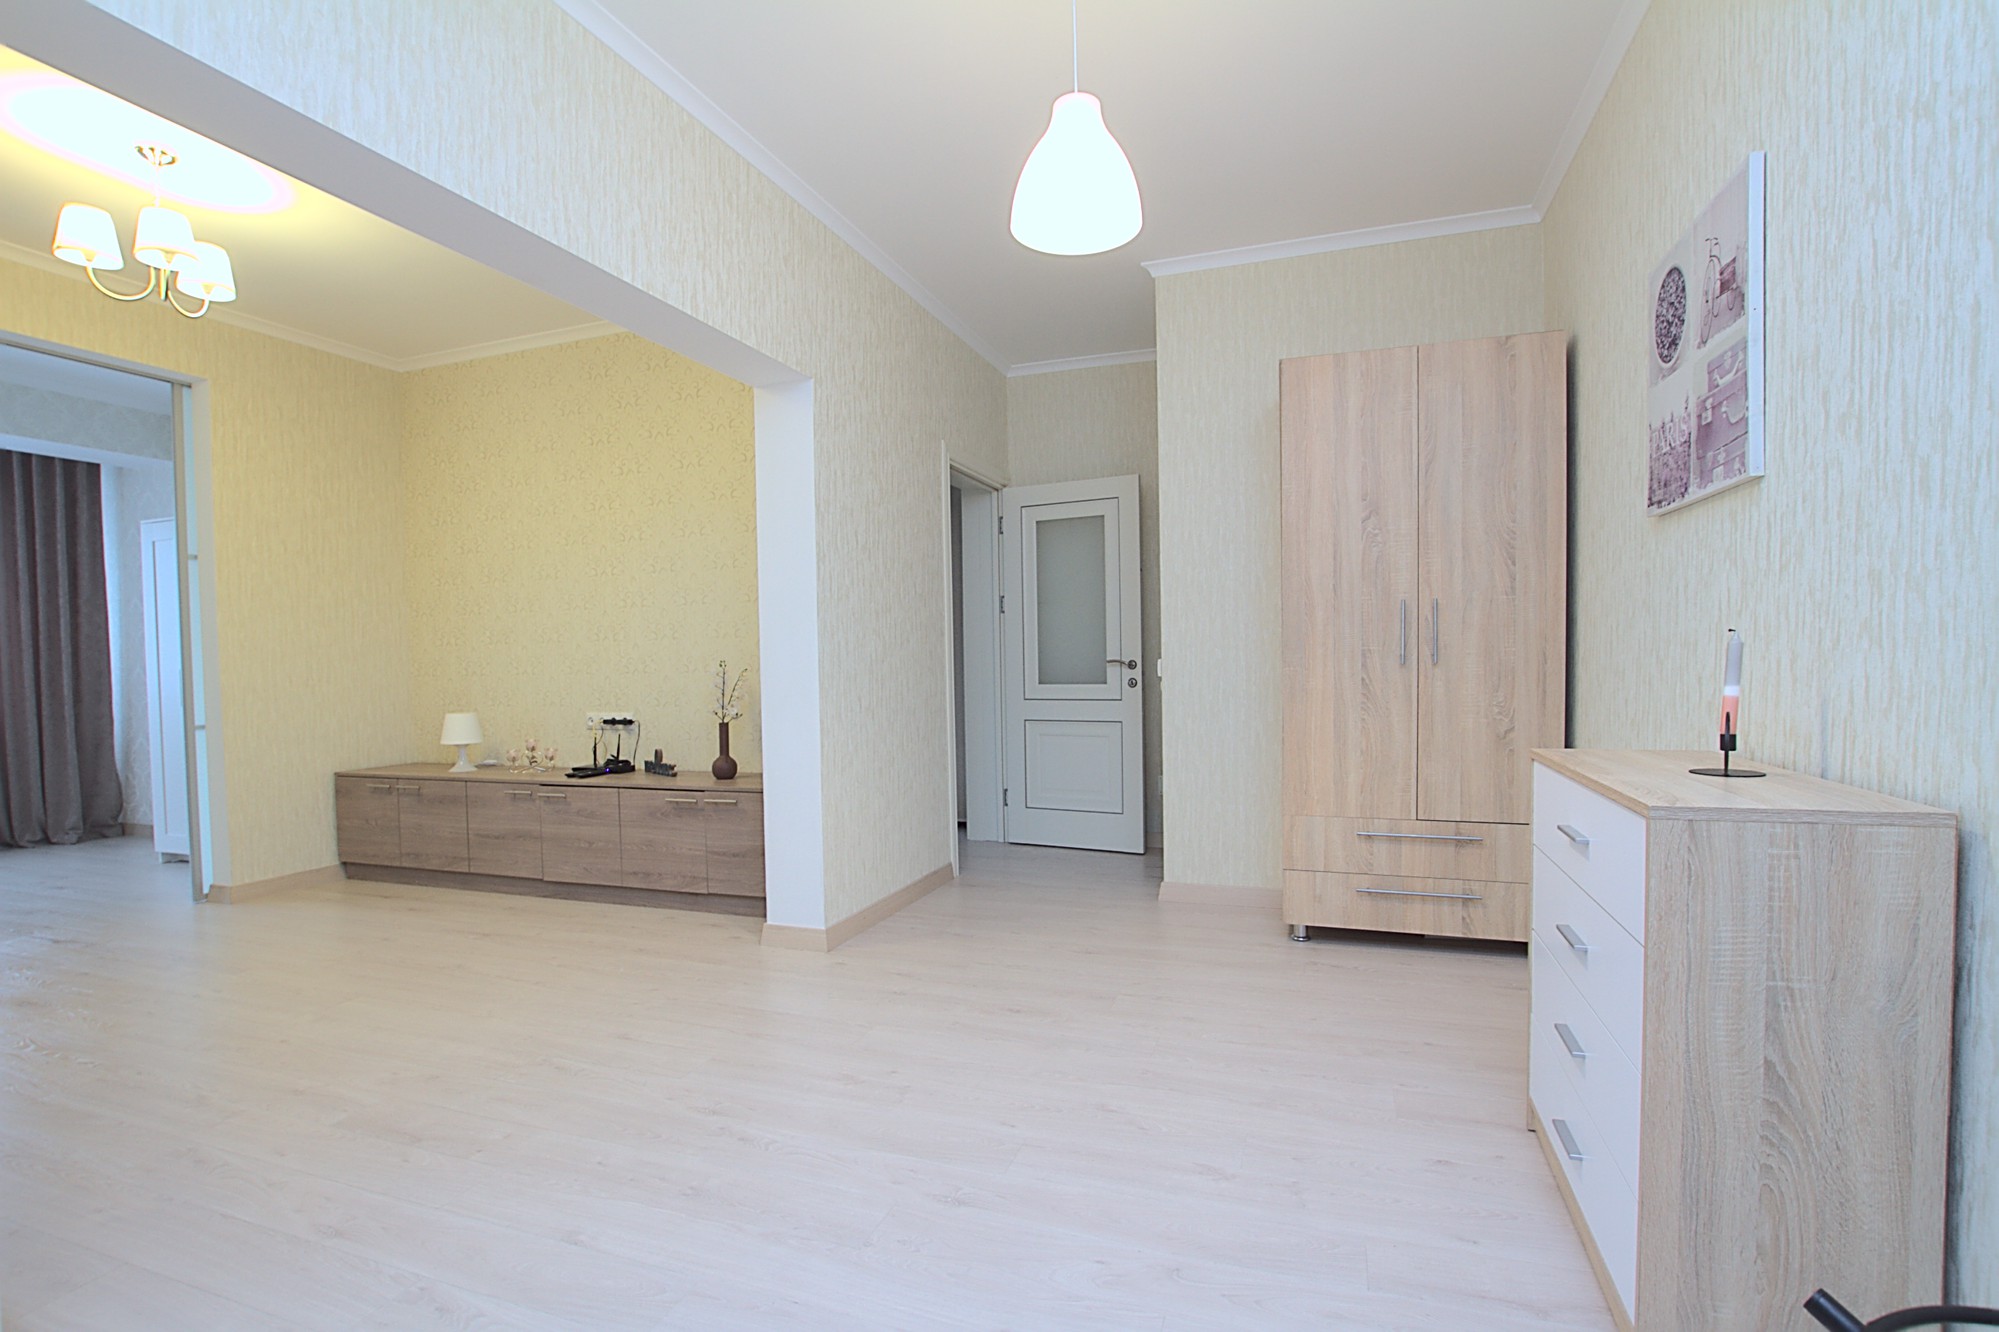 Wohnung zur Miete in Chisinau, Botanica: 3 Zimmer, 1 Schlafzimmer, 80 m²